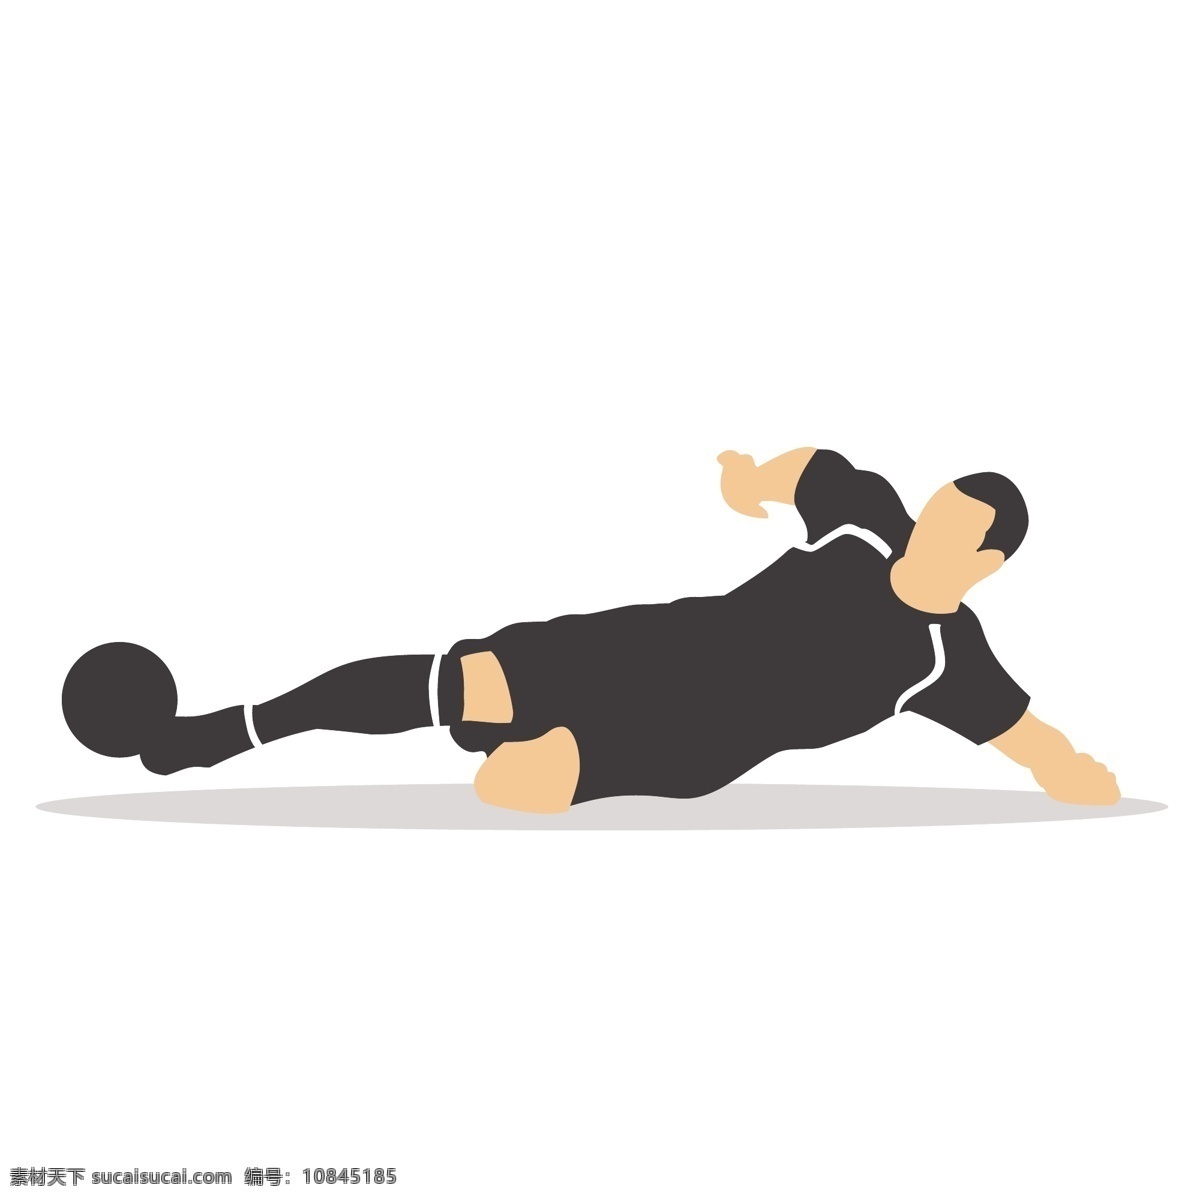 卡通 挡球 矢量 足球 足球运动 踢足球 姿势 踢球姿势 运动姿势 体育 体育运动 踢球动作 动作姿势